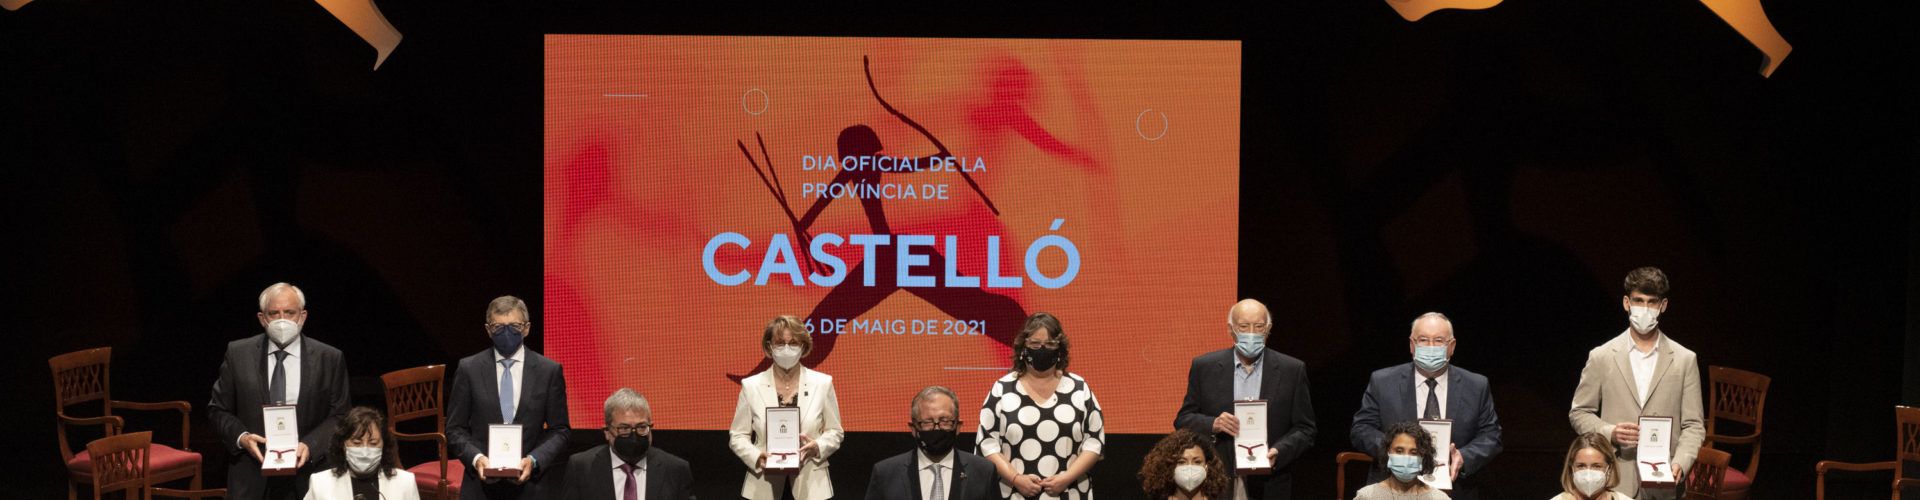 José Martí enalteix en el Dia de la Província la “gratitud” de tots els castellonencs al treball desenvolupat pel col·lectiu sanitari durant la pandemia